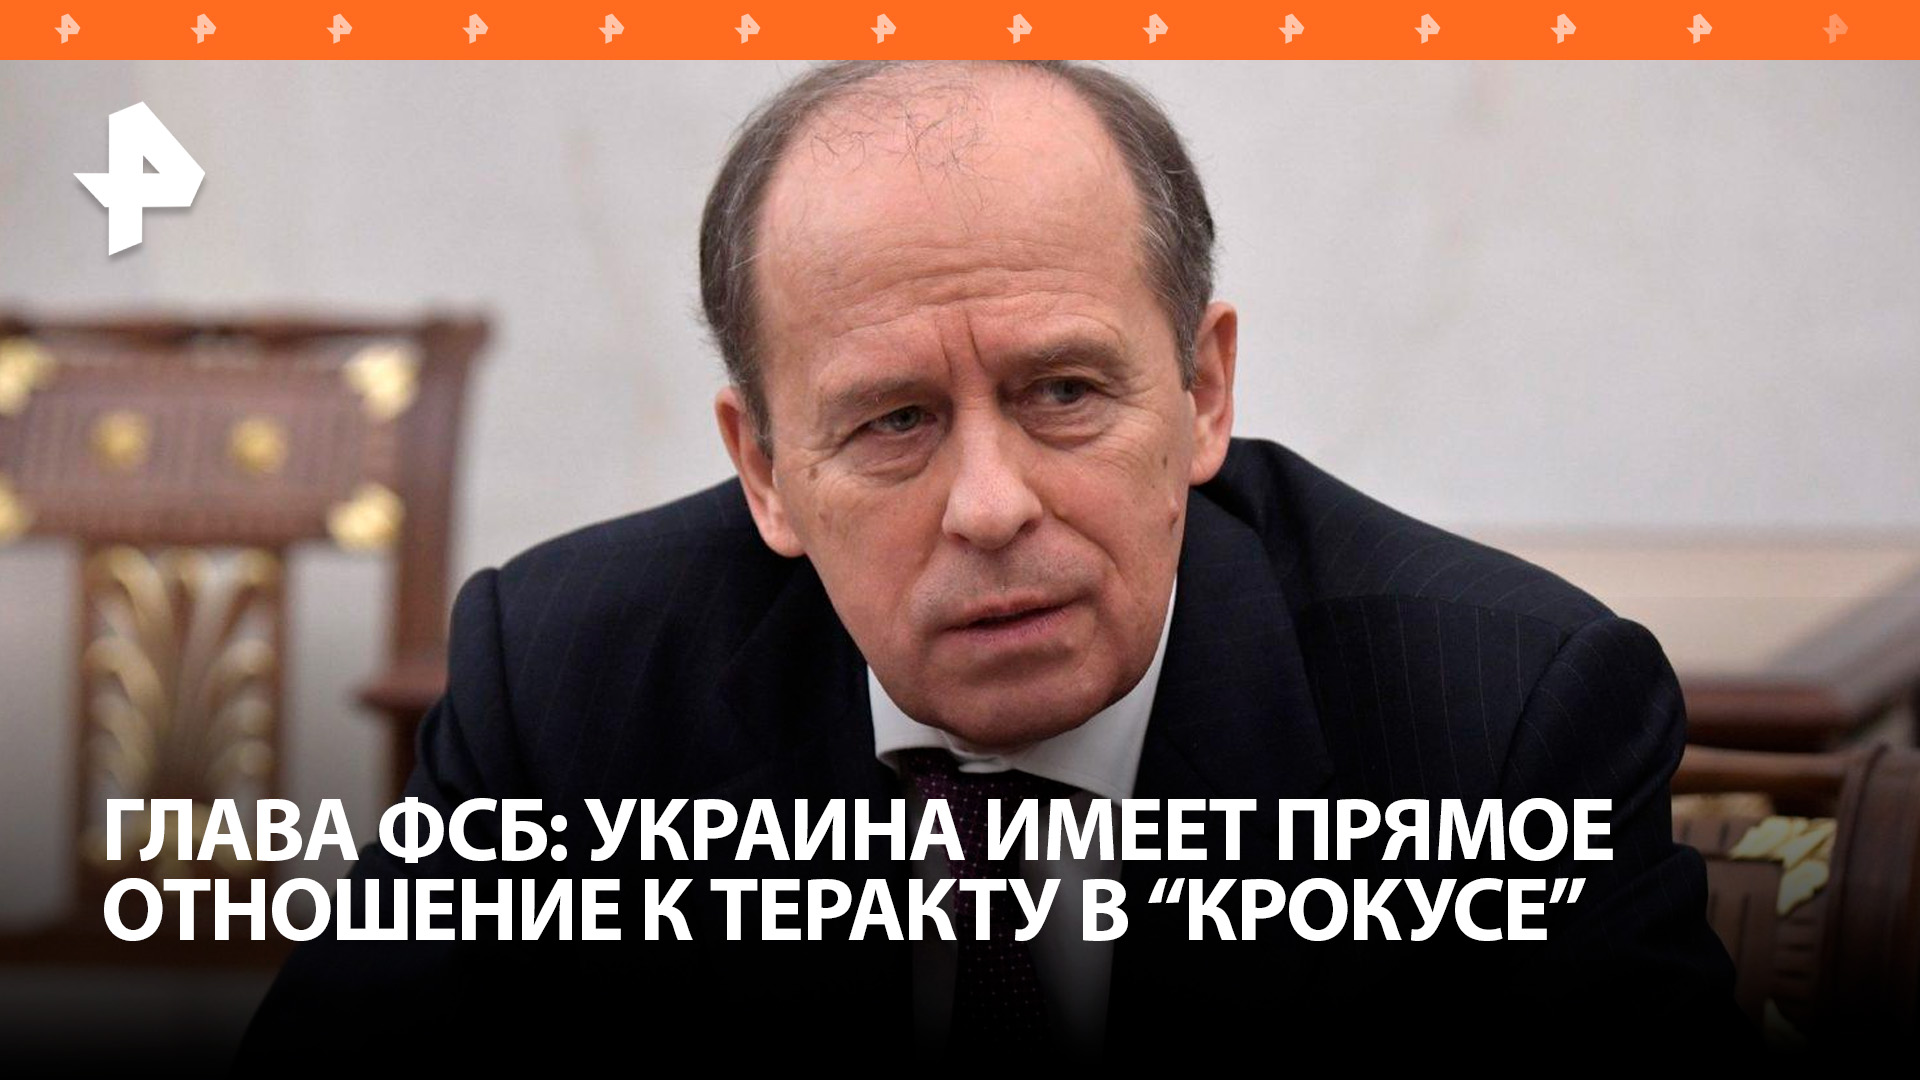 ФСБ: военная разведка Украины имеет непосредственное отношение к теракту в "Крокусе" / РЕН Новости